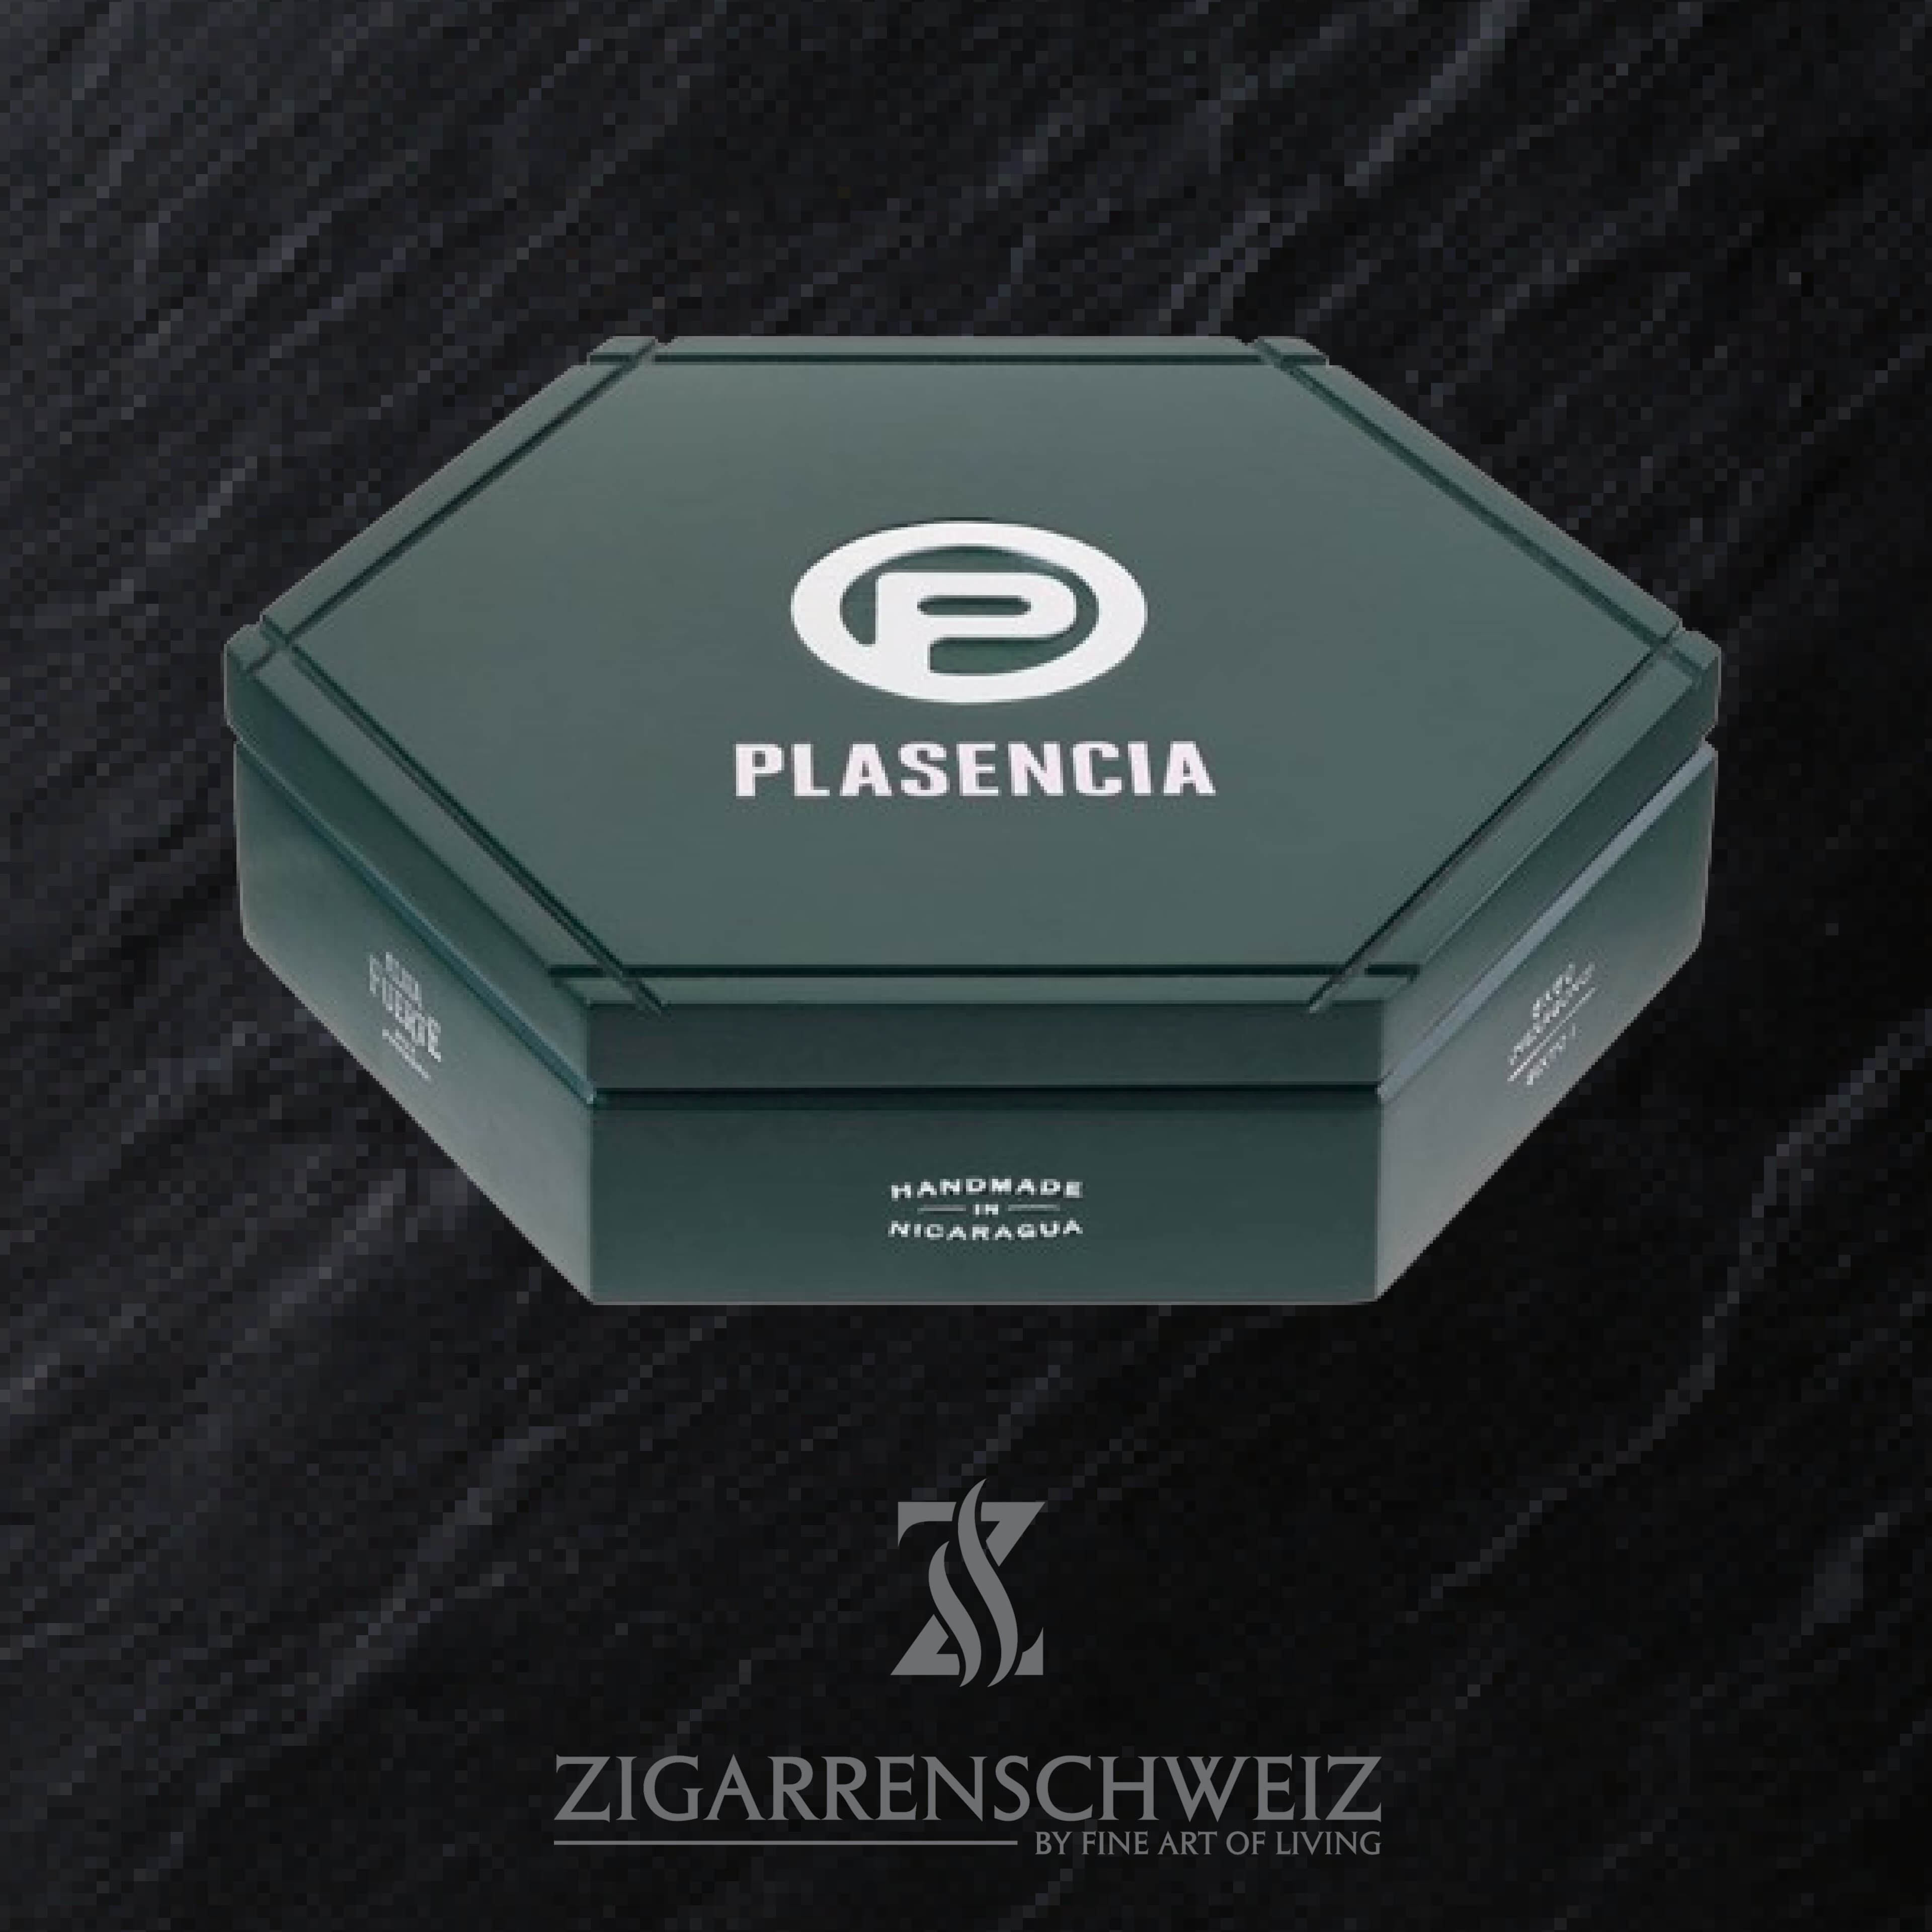 Plasencia Alma Fuerte Colorado Claro Sixto 1 Zigarren Kiste geschlossen